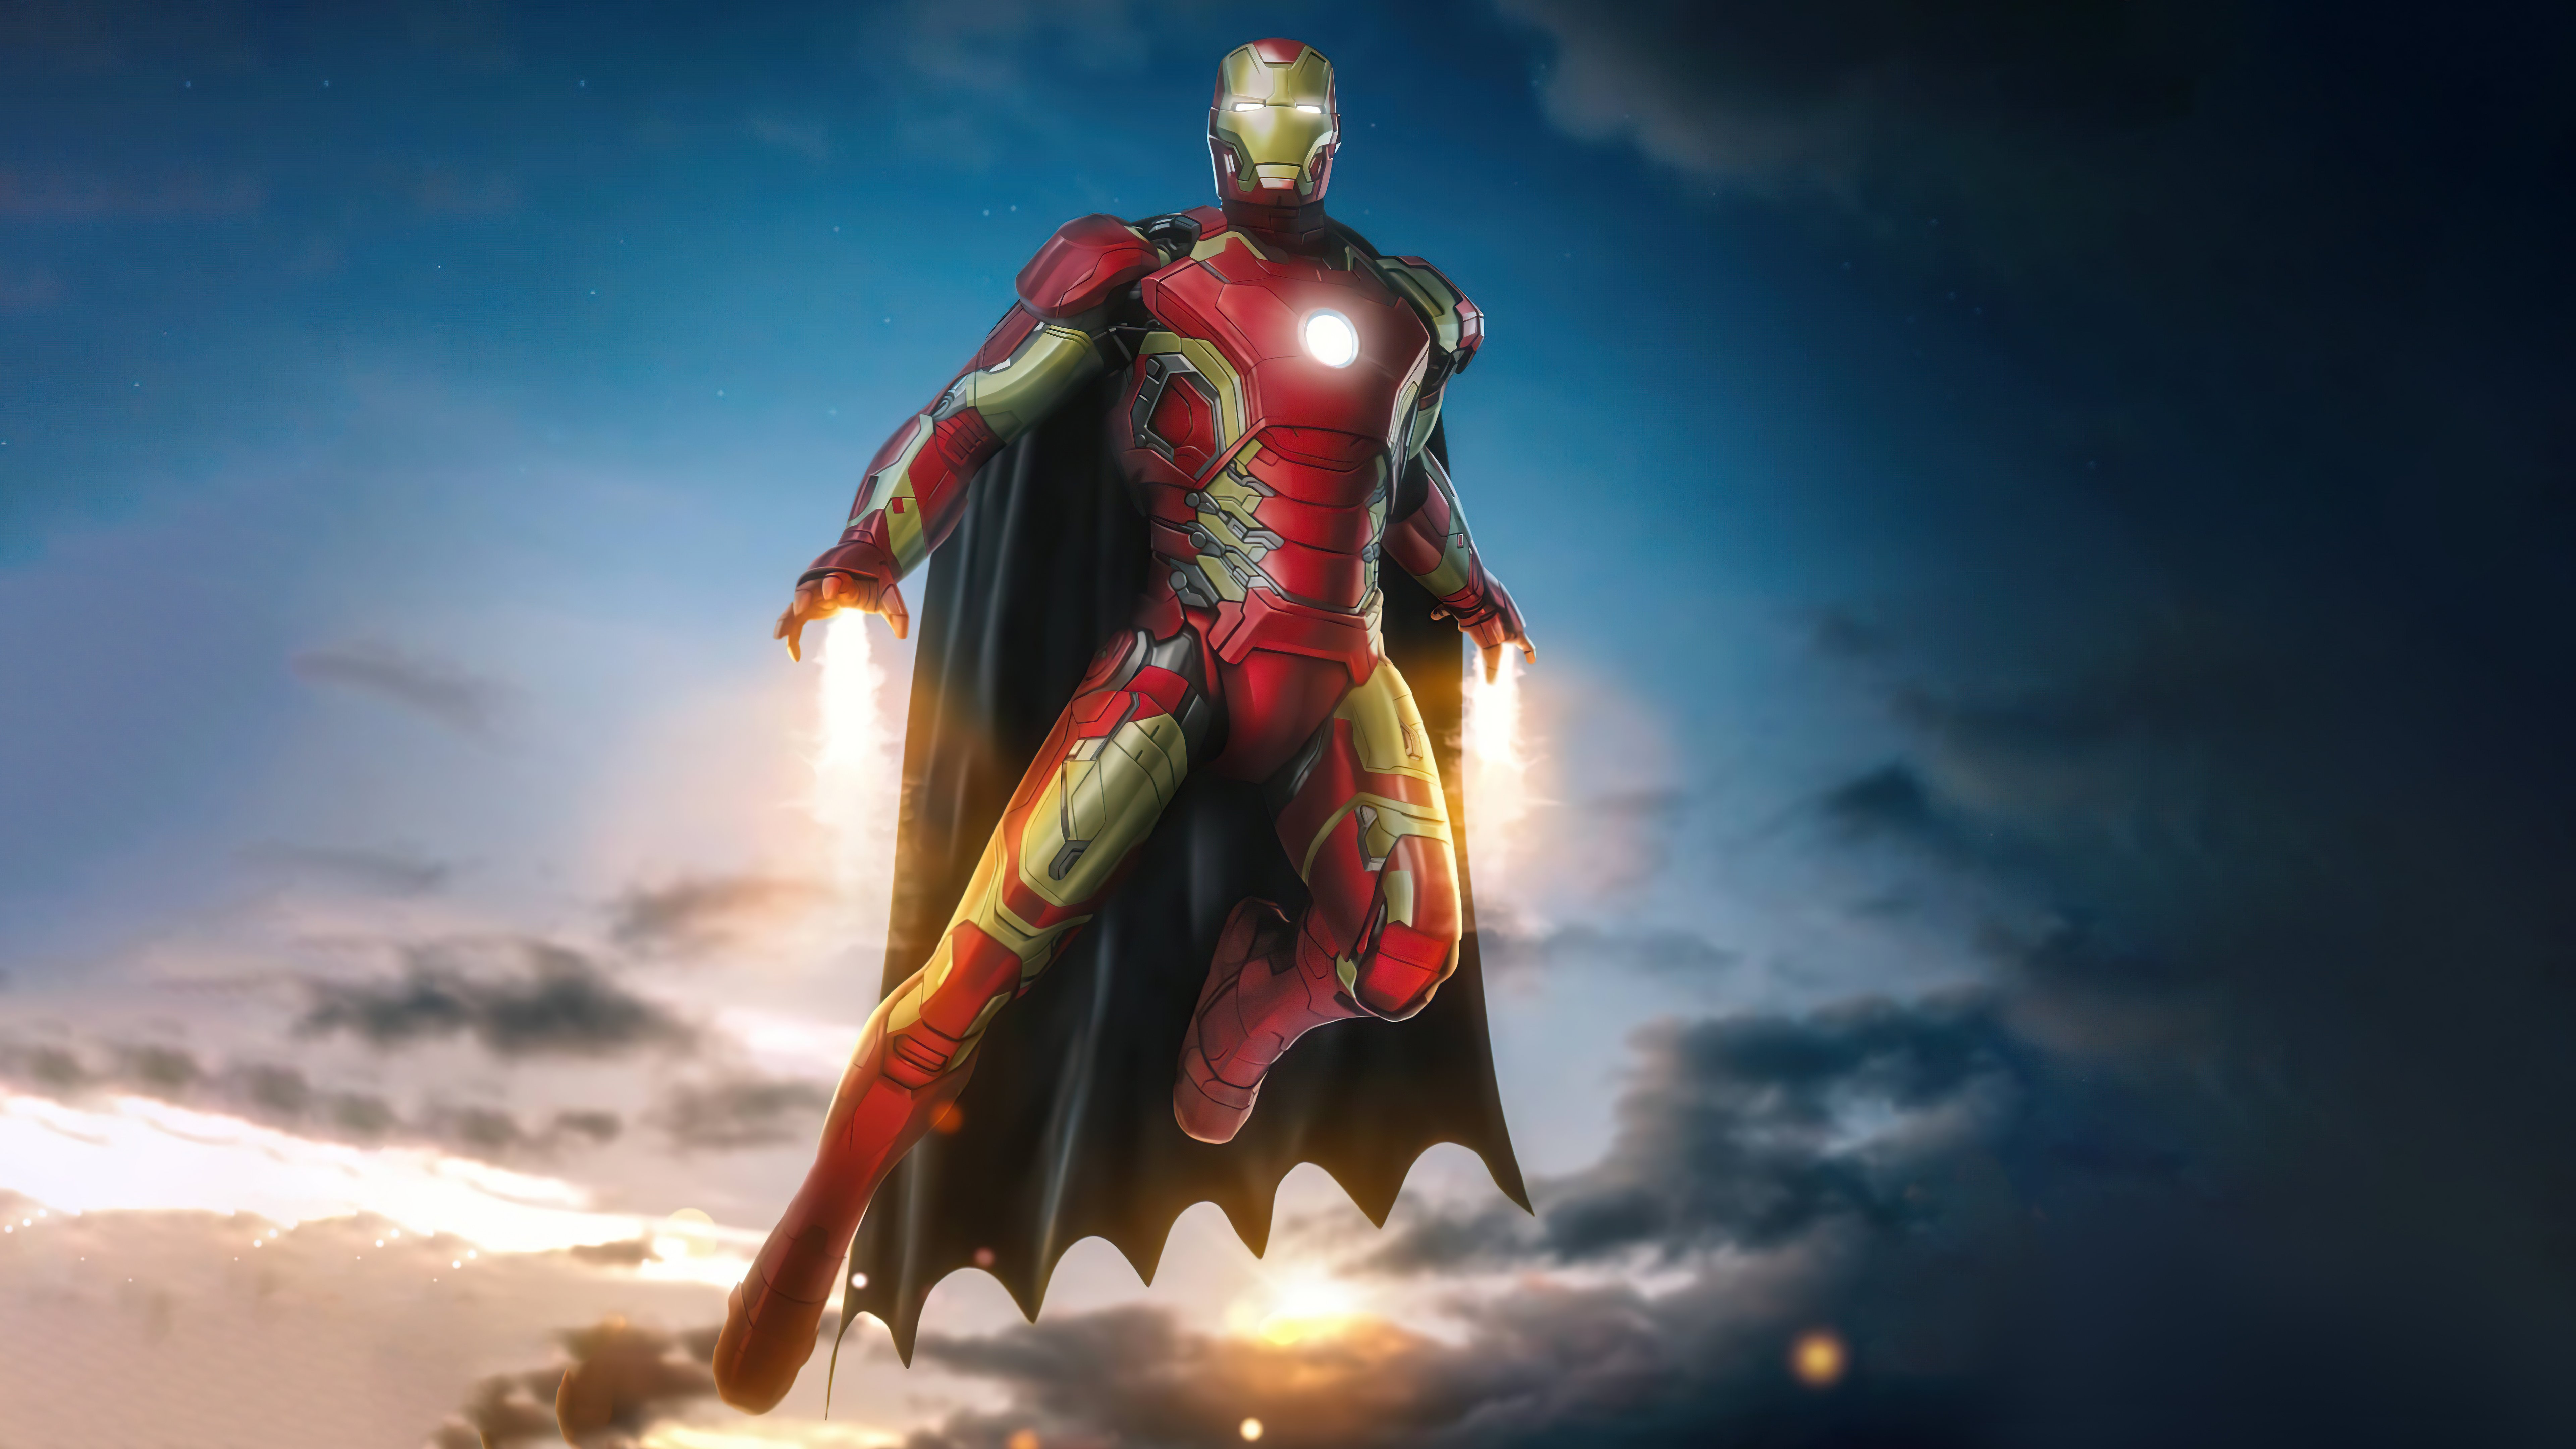 Fondos de pantalla Iron Man con capa de Batman